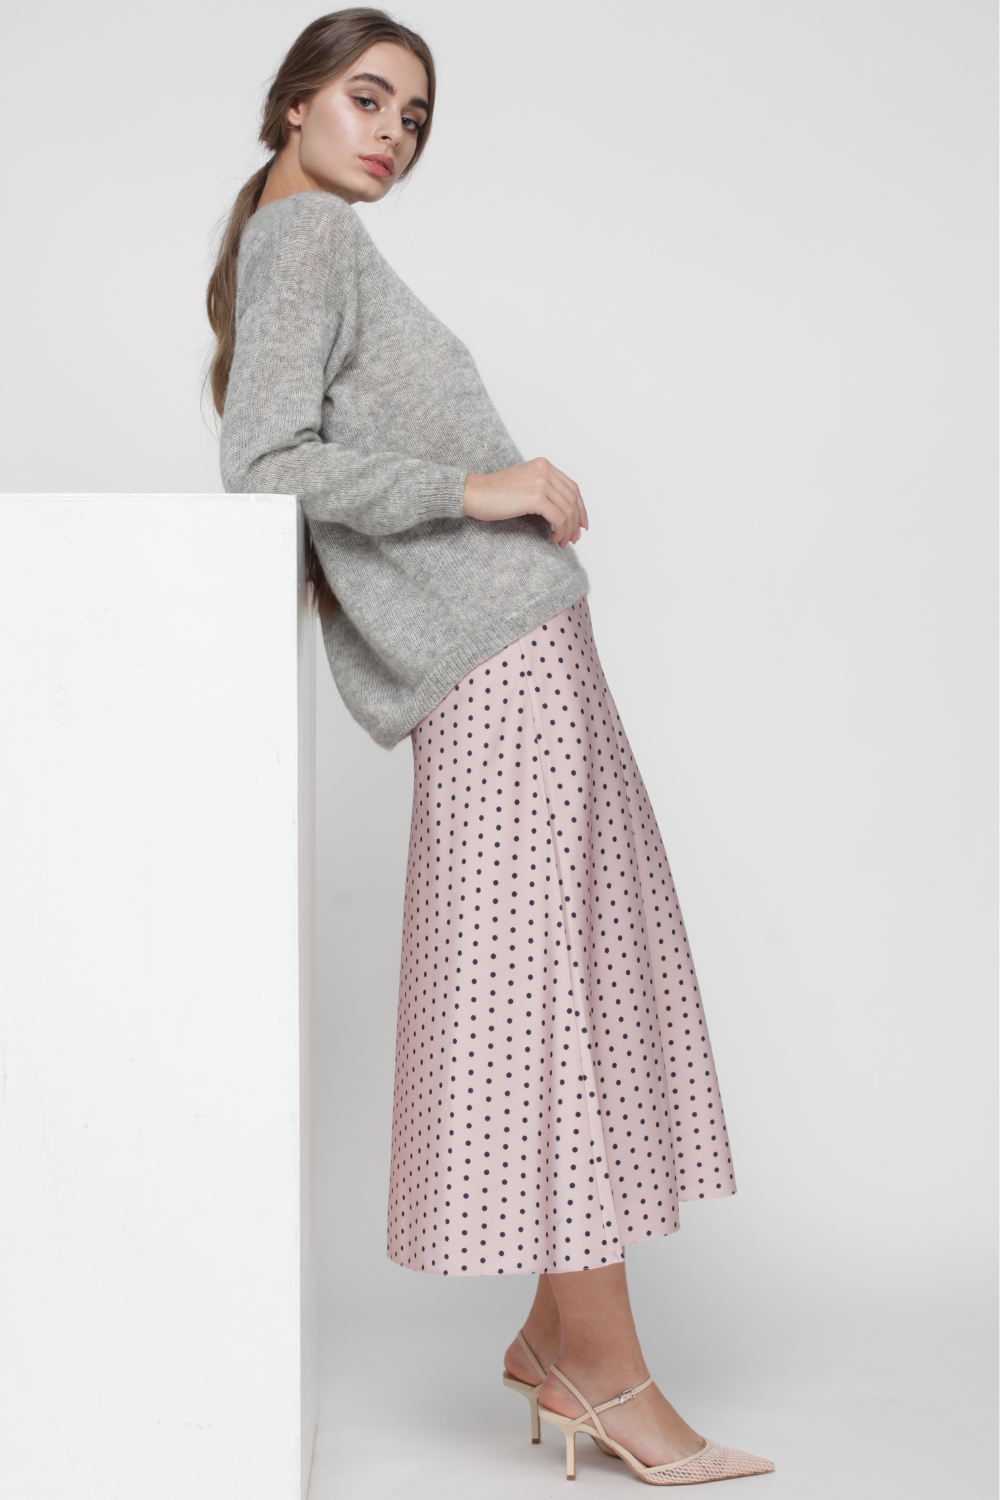 Hedvábná sukně s puntíky na gumovém pásku (Miss Secret) SK-005-pink